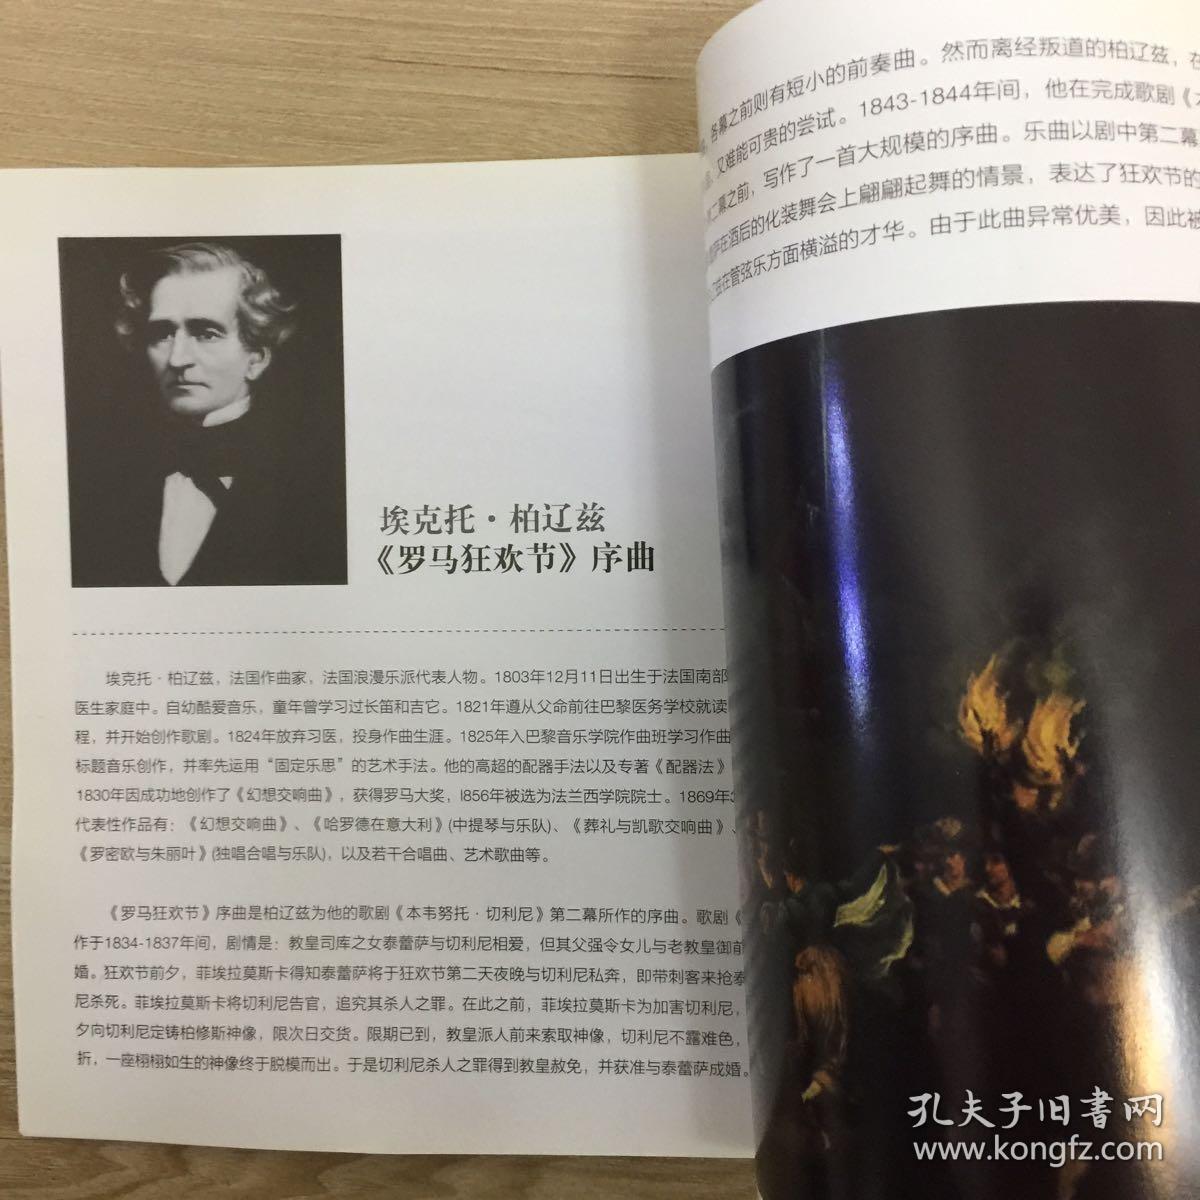 唐代新乐府运动的倡导者和主要代表诗人是_儒家的音乐哲学音乐美学最主要的代表作是什么_杜甫的作品代表着儒家美学